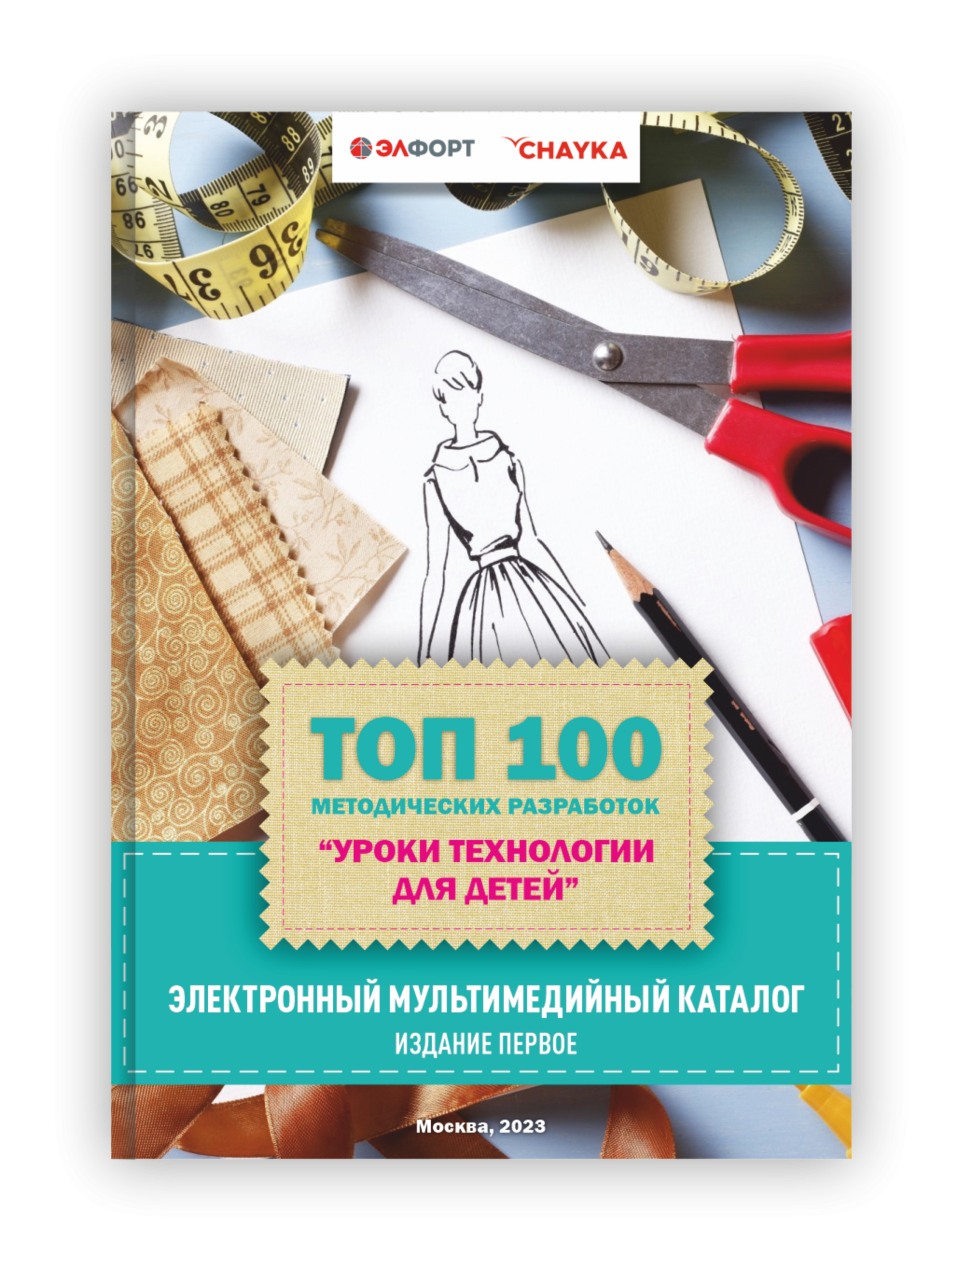 1-й выпуск каталога "Топ-100 методических разработок. Уроки технологии для детей"